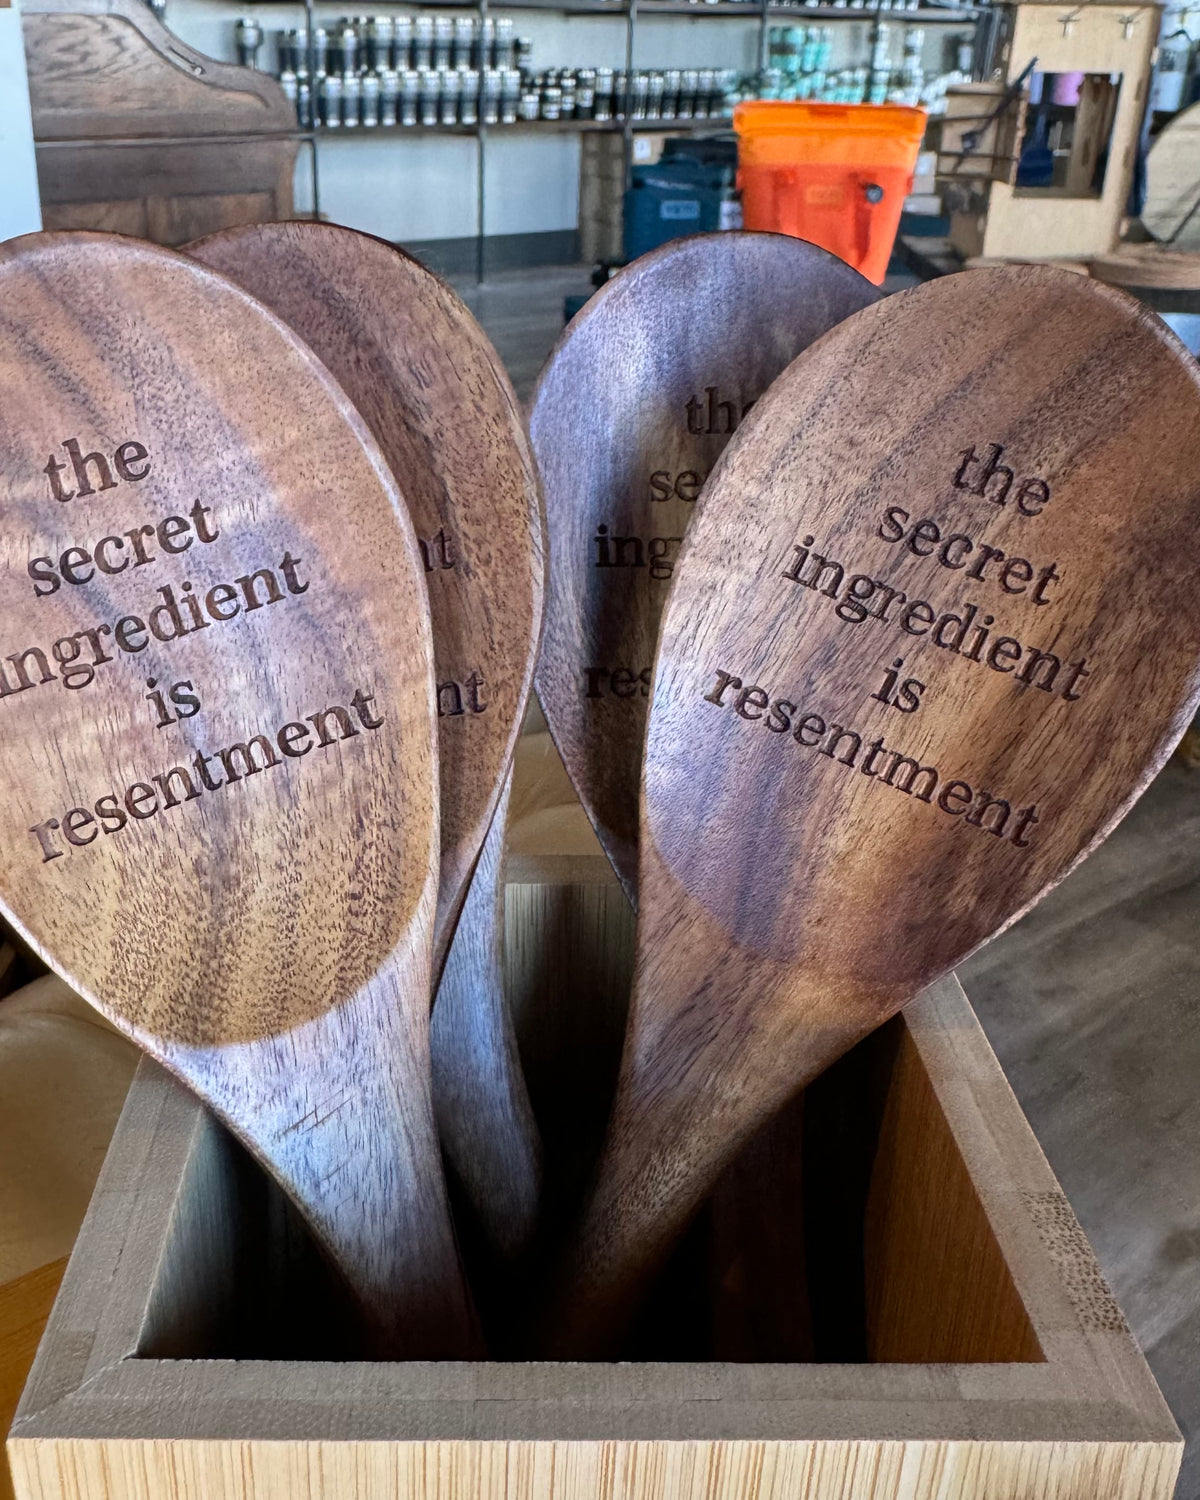 Teak Wood Mixing Spoon - Secret Ingredient is Resentment